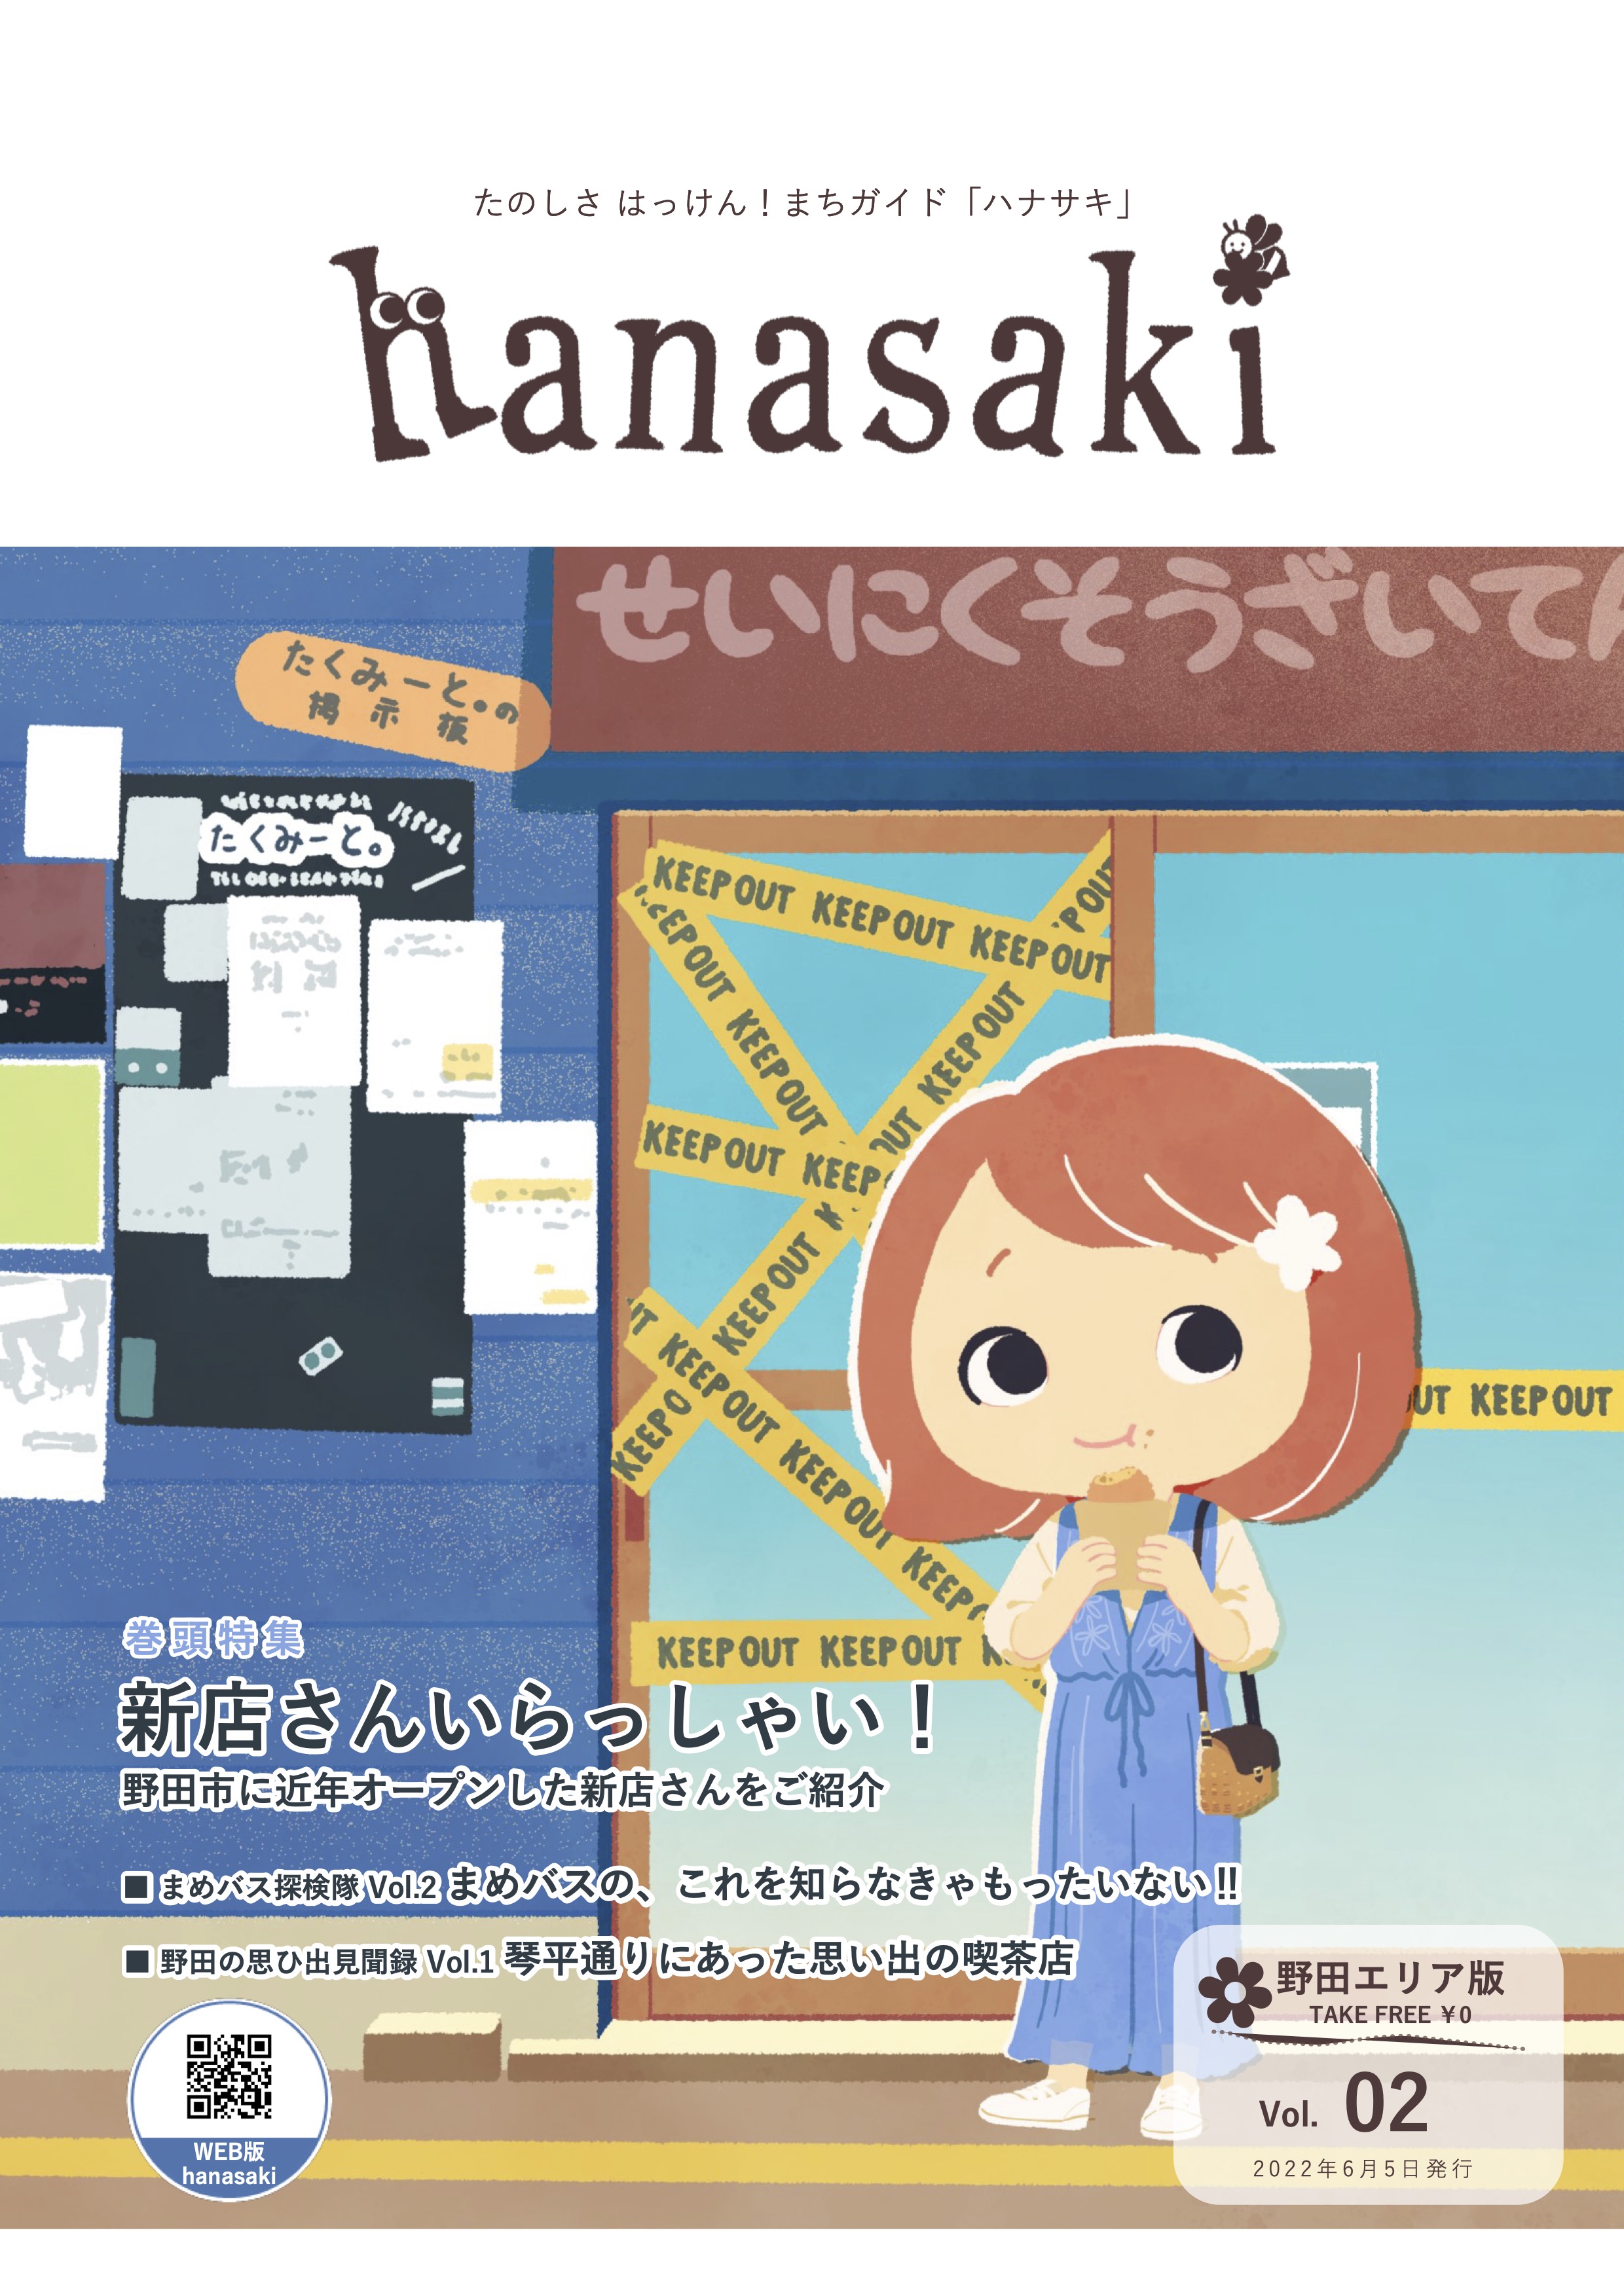 hanasaki_vol01